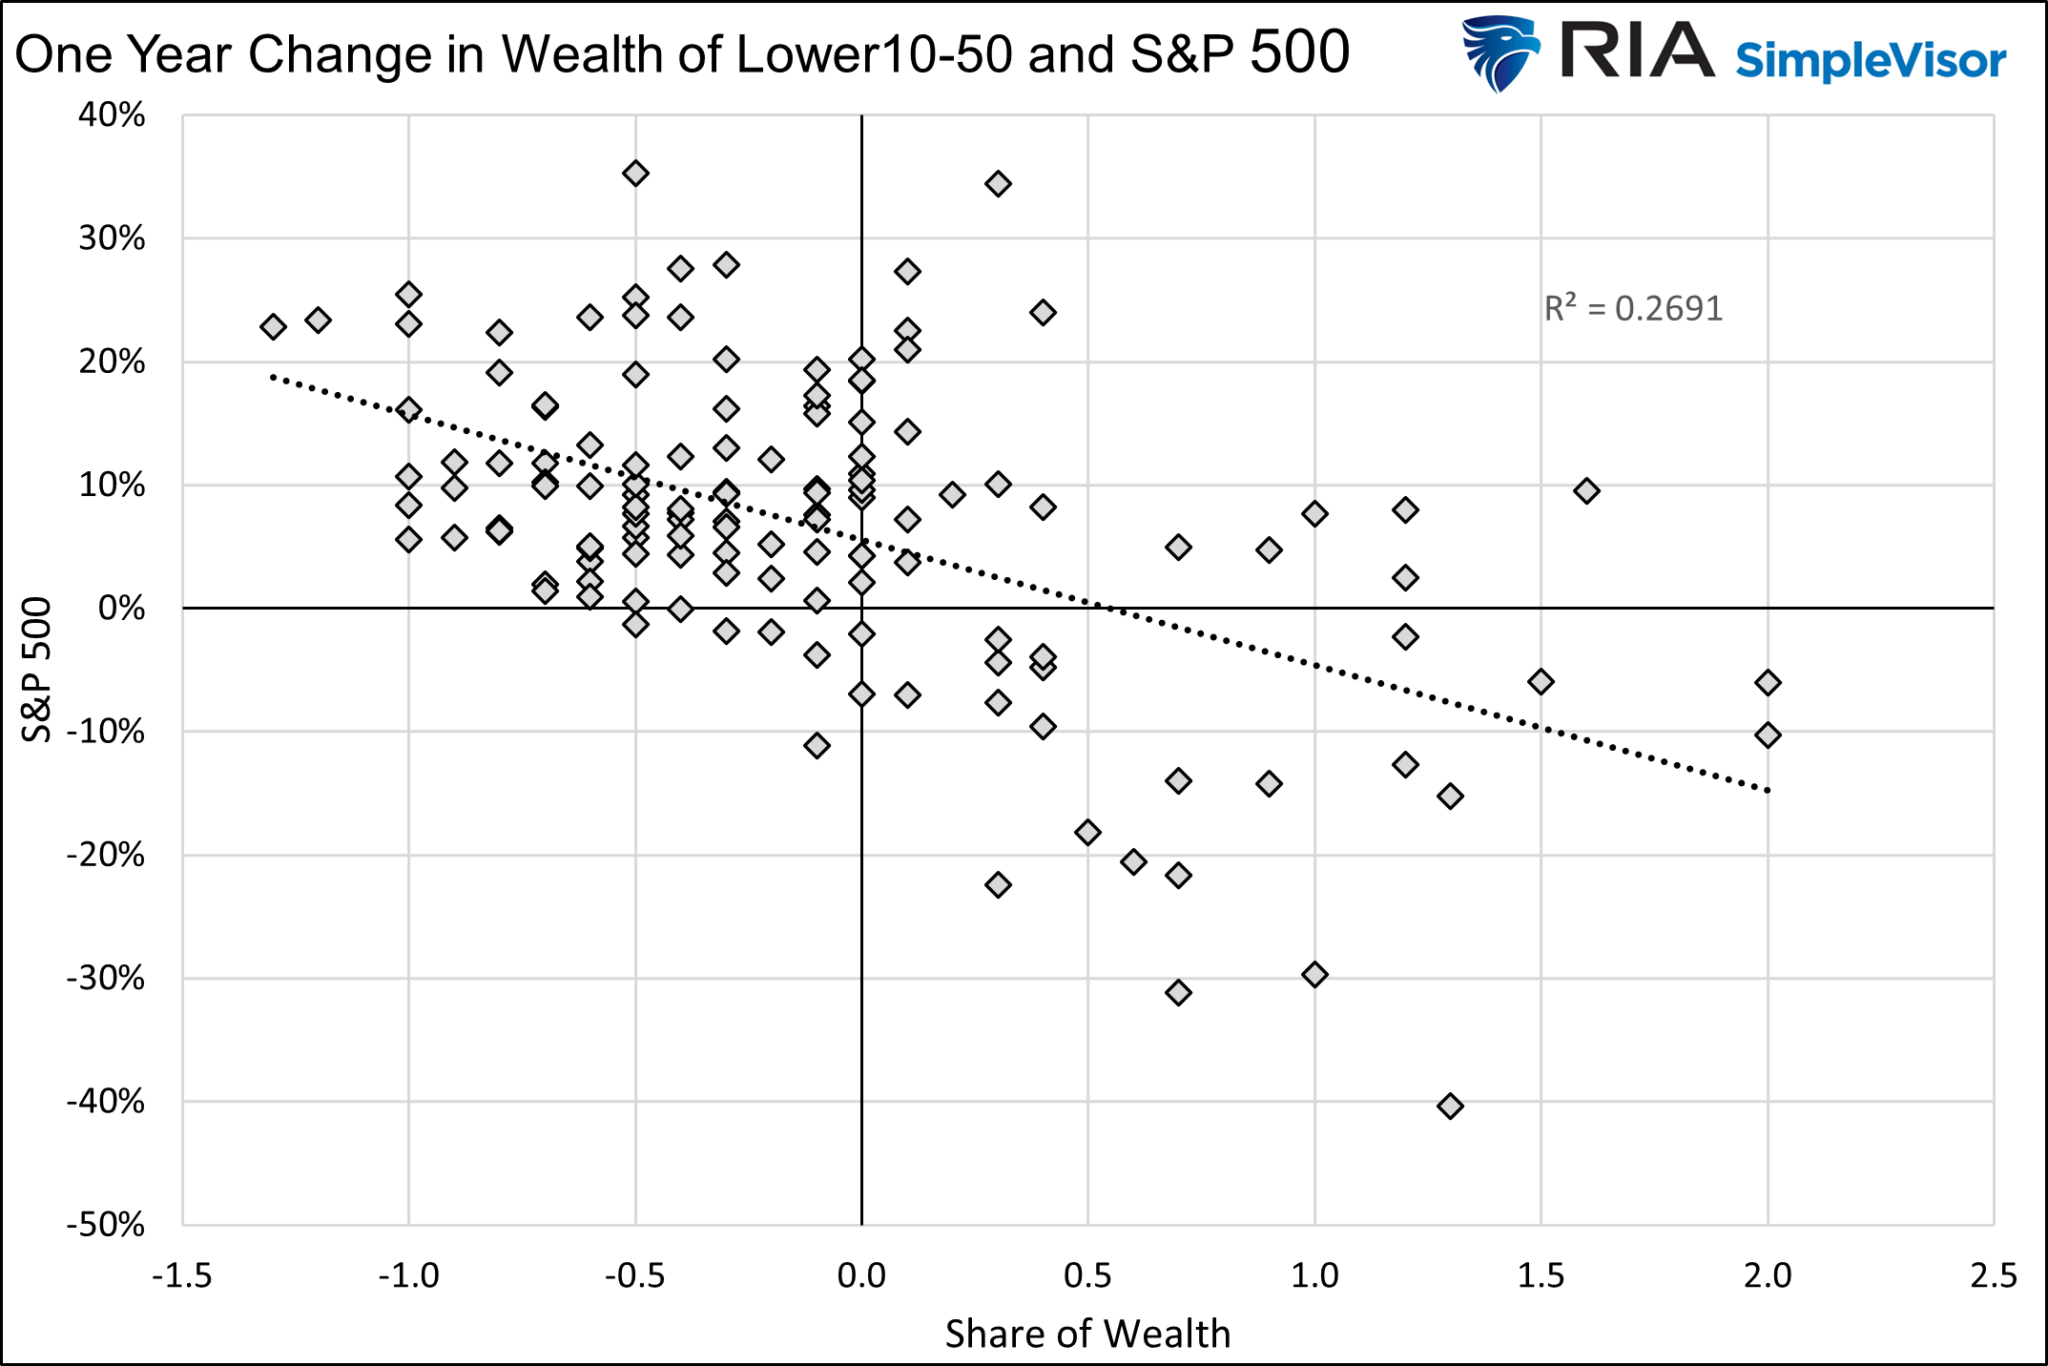 1-Jahres-Veränderung des Vermögens der unteren 10-50% vs S&P 500